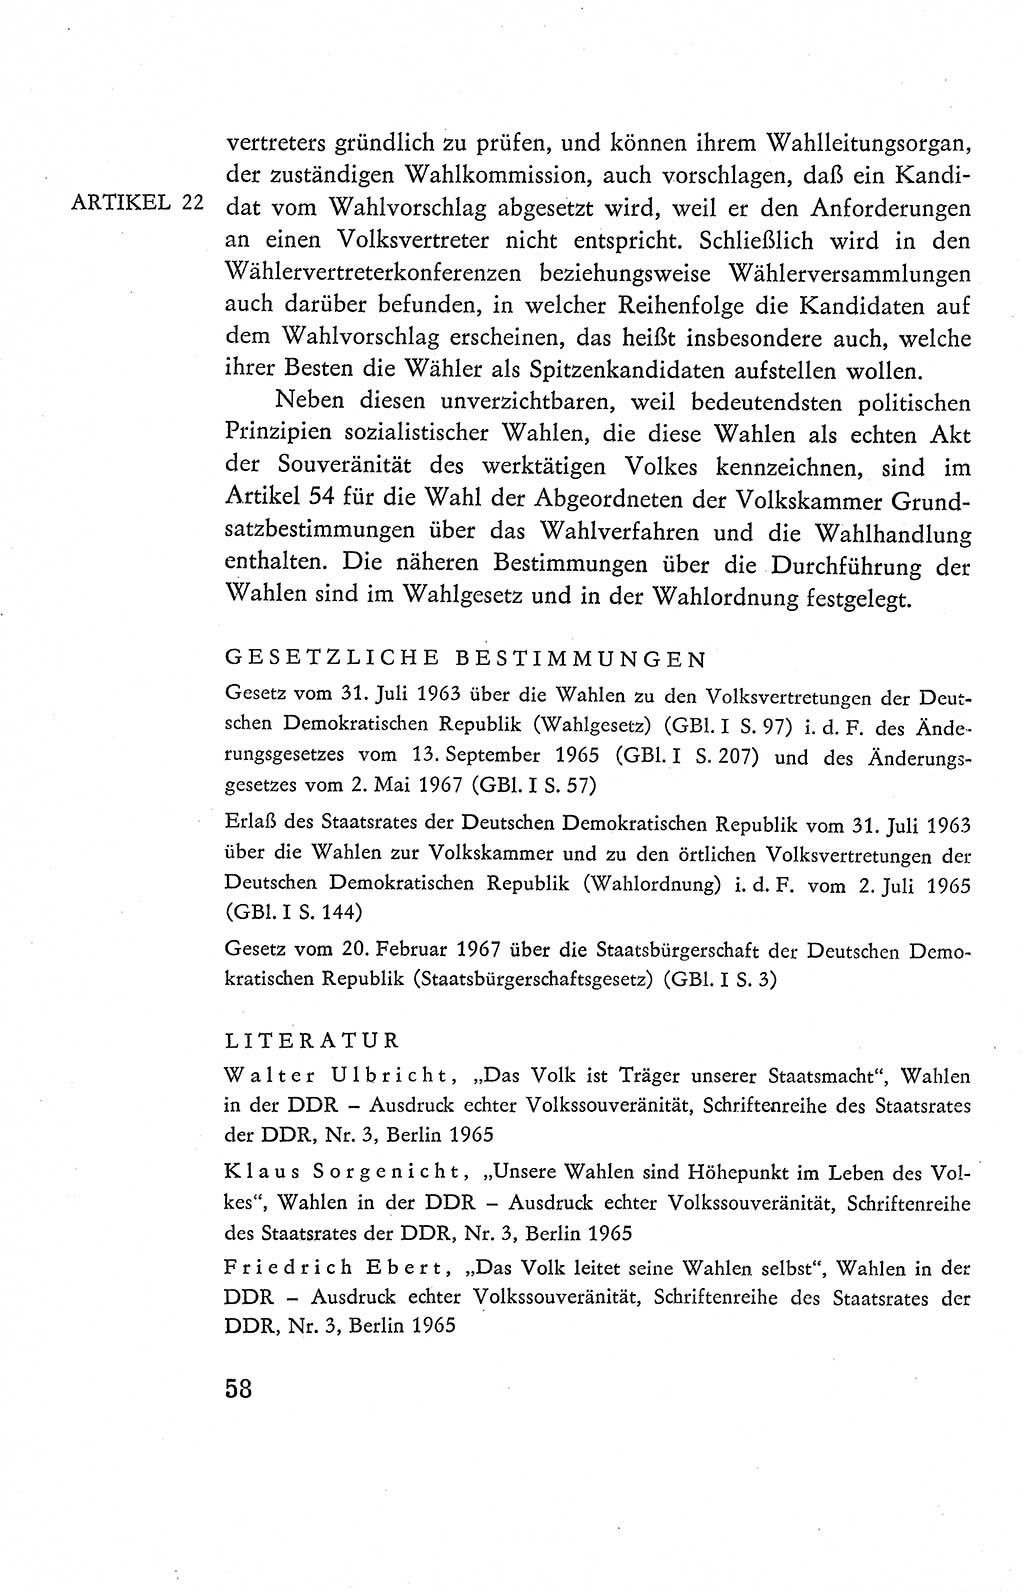 Verfassung der Deutschen Demokratischen Republik (DDR), Dokumente, Kommentar 1969, Band 2, Seite 58 (Verf. DDR Dok. Komm. 1969, Bd. 2, S. 58)